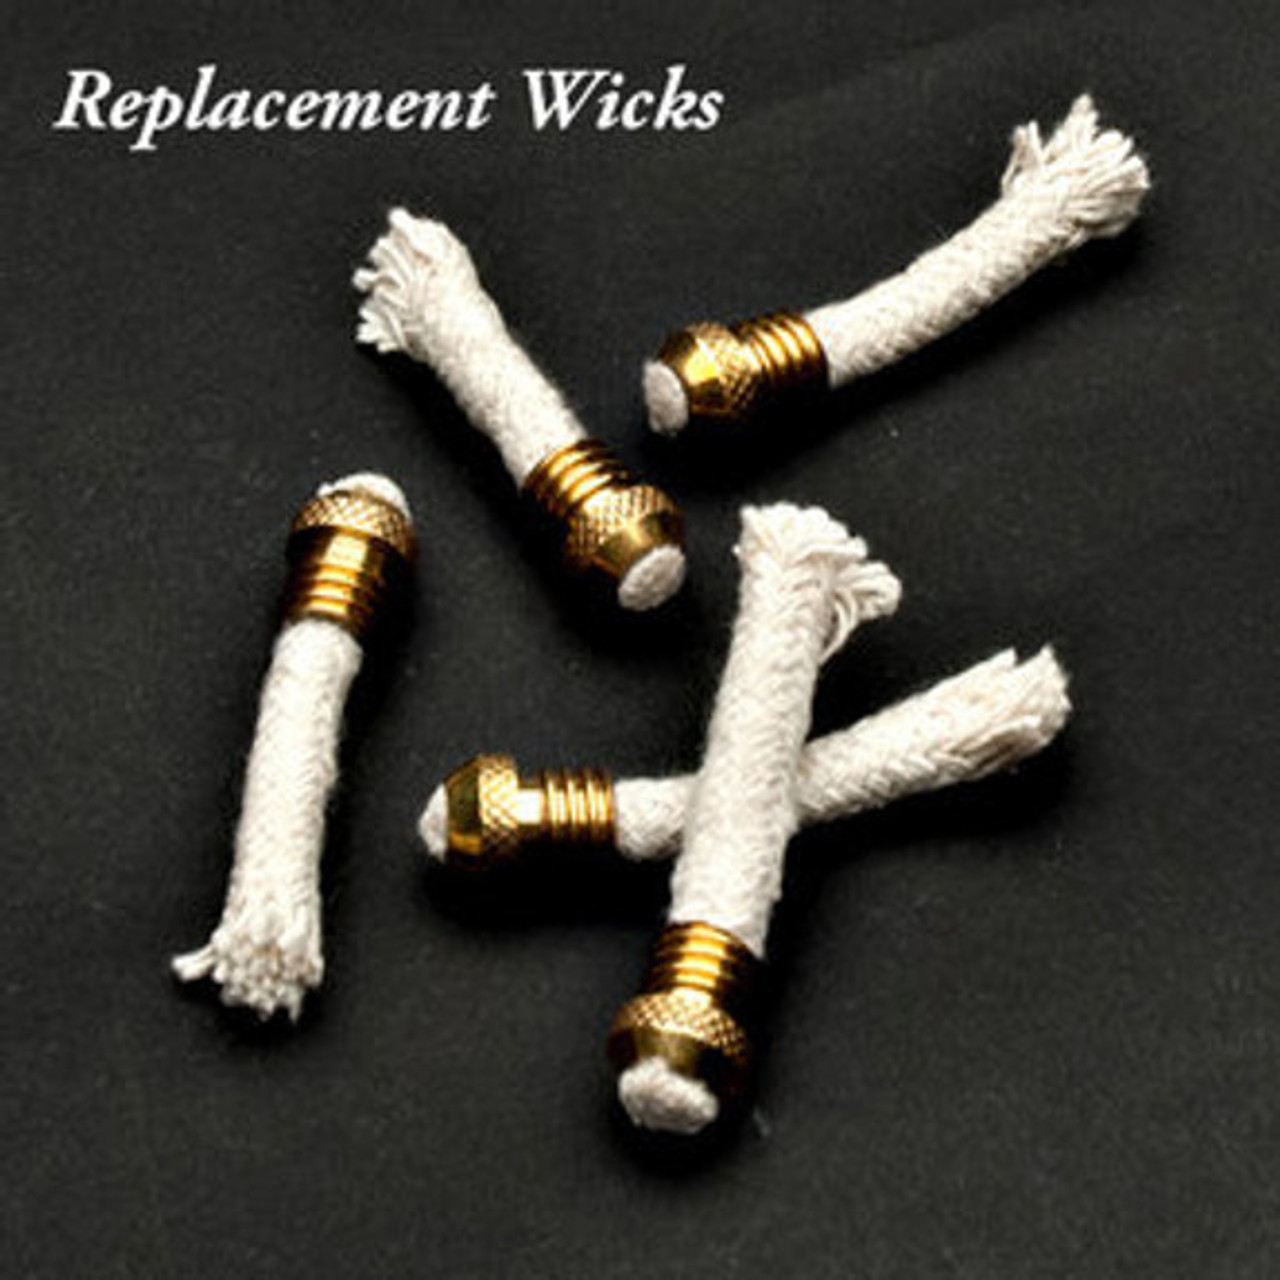 Replacement Lantern Wicks (Set of 5)